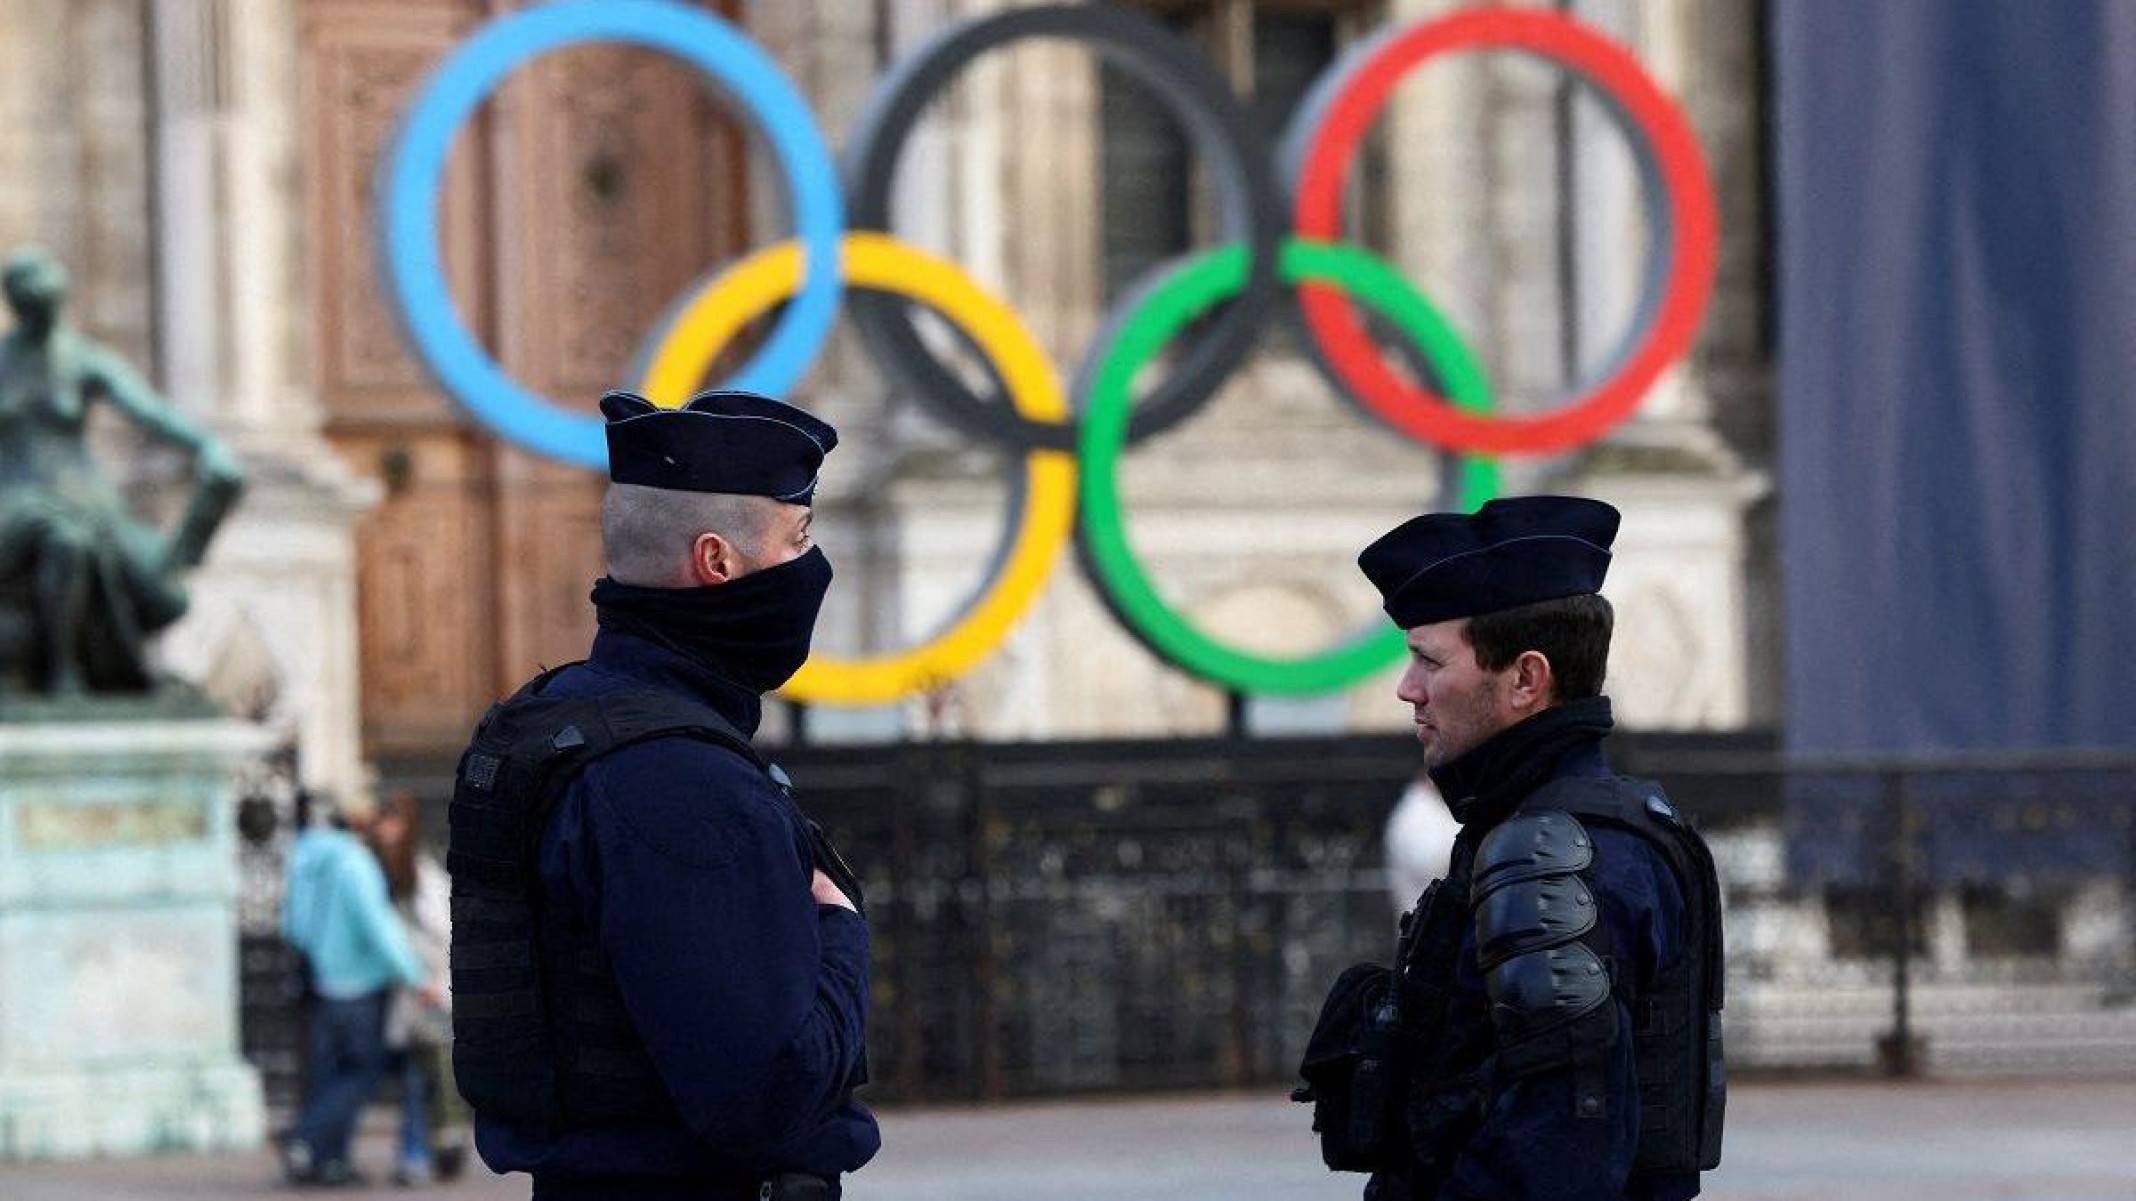 Olimpíada de Paris pode ser alvo de extremistas? 3 fatores-chave para entender os riscos